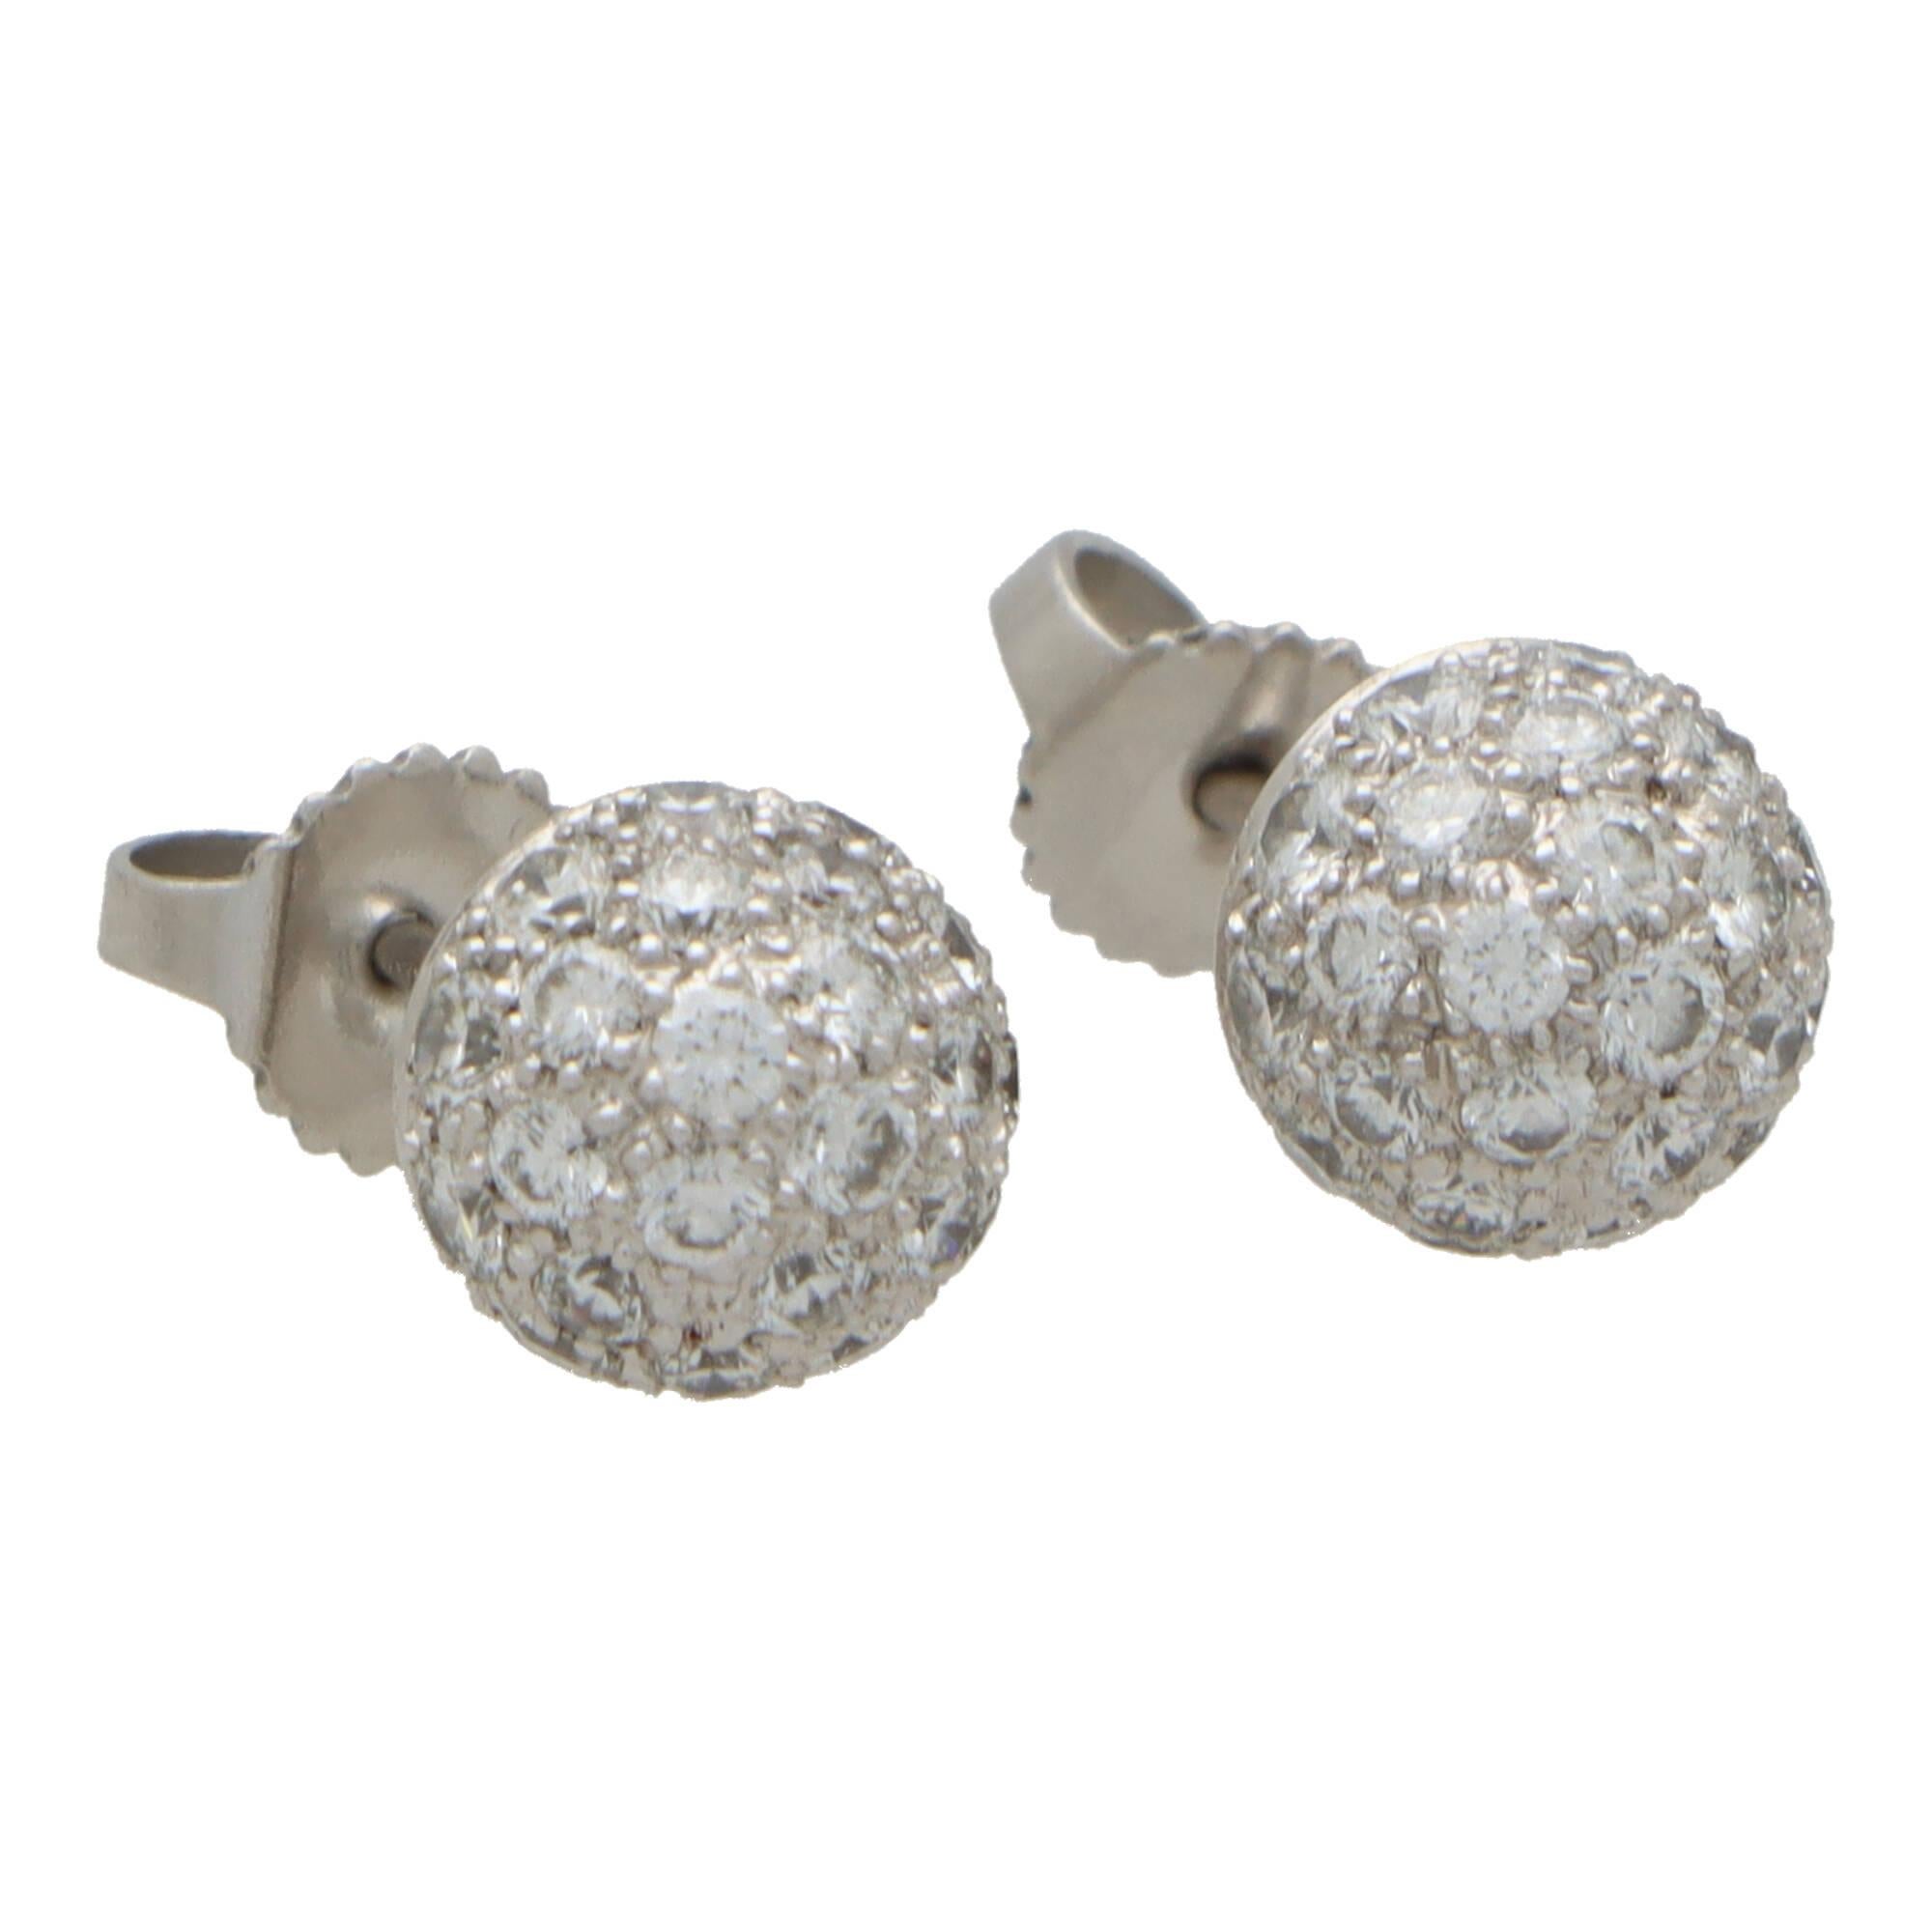 Une belle paire de boucles d'oreilles boule en diamant de Tiffany & Co. en platine.

Issue d'un modèle abandonné de la collection Etoile actuelle, chaque boucle d'oreille présente une boule en platine, entièrement pavée de 27 diamants ronds de